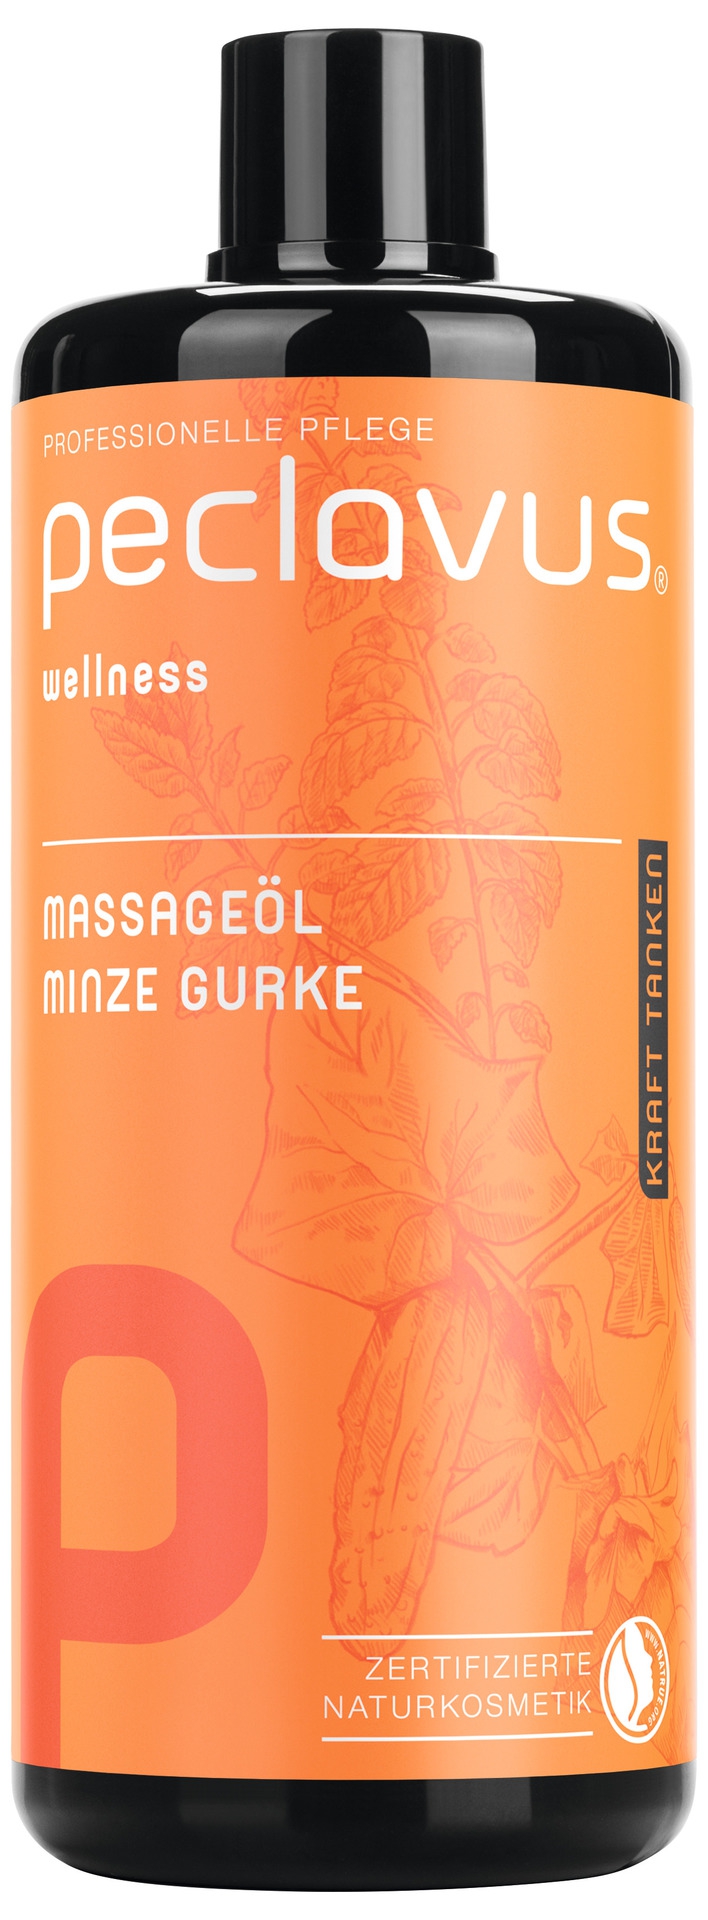 PECLAVUS Massageöl Minze Gurke 500 ml | Kraft tanken